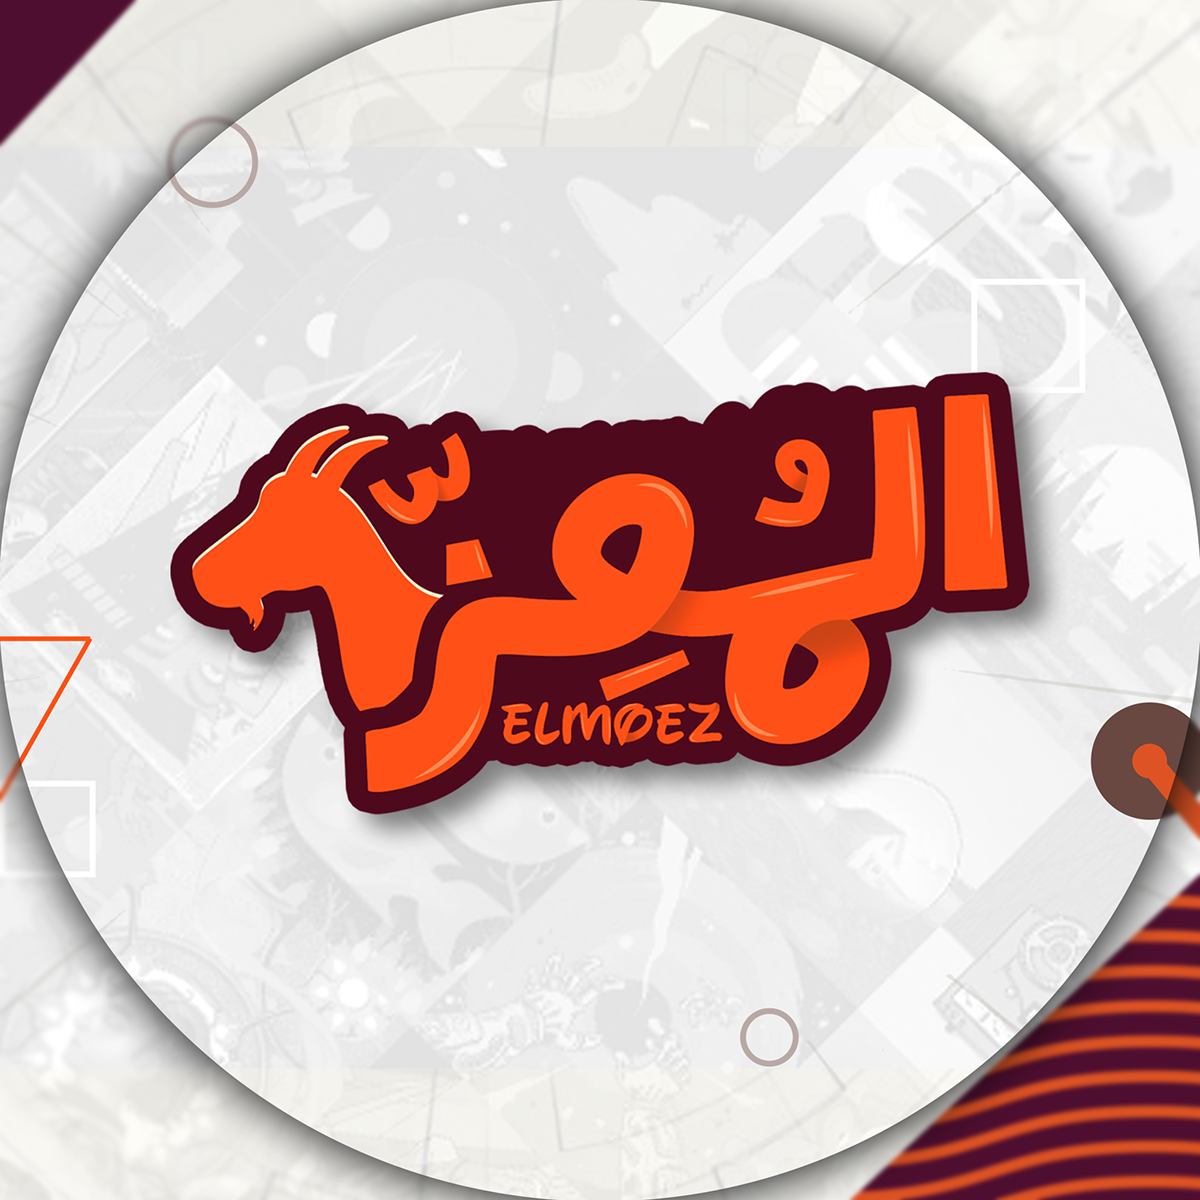 ELMOEZ Content Creator logo on Behance